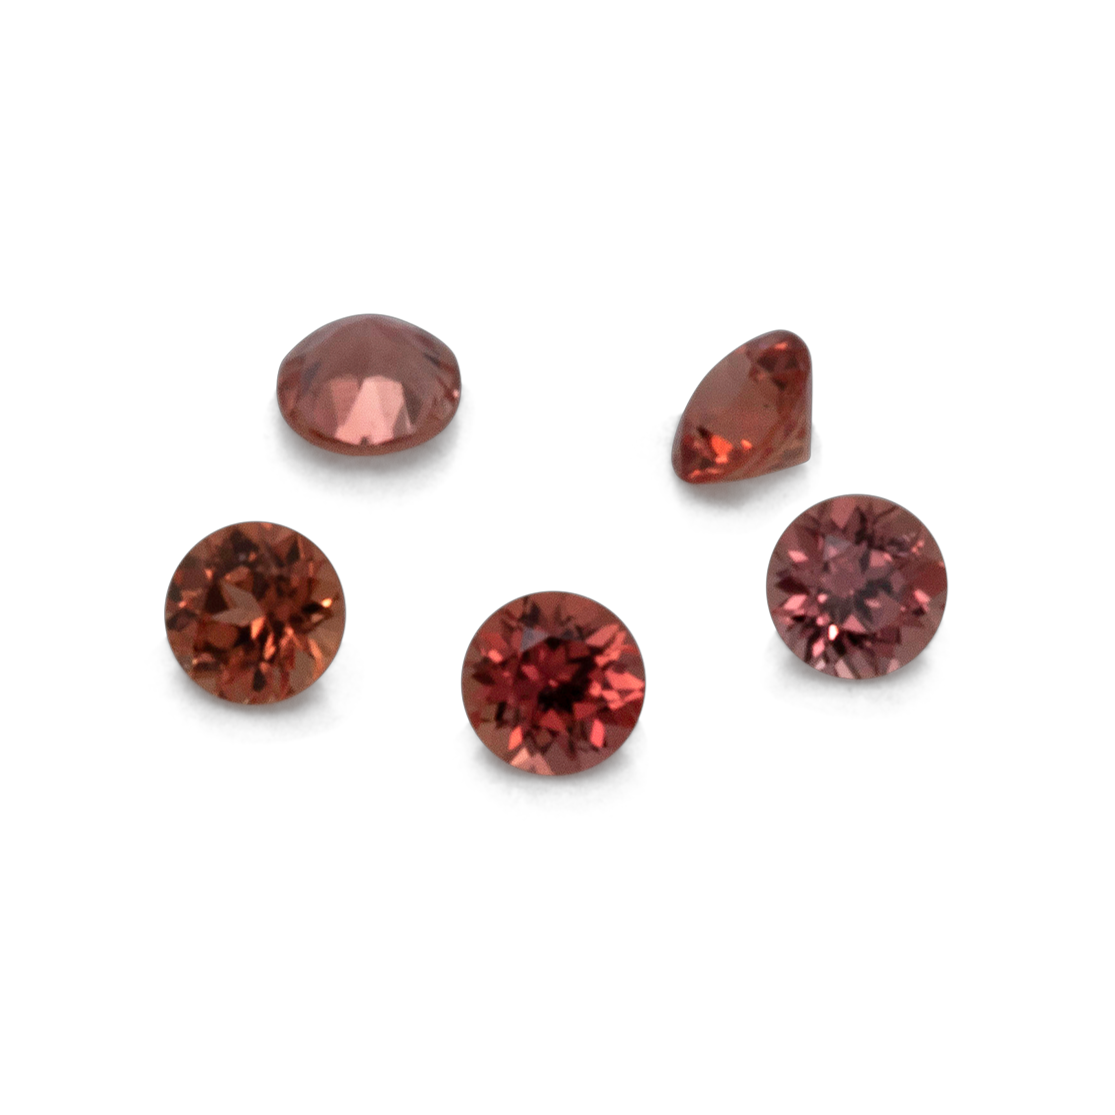 Saphir - orange/rot, rund, 1x1 mm, ca. 0,005 cts, Nr. XSR11147